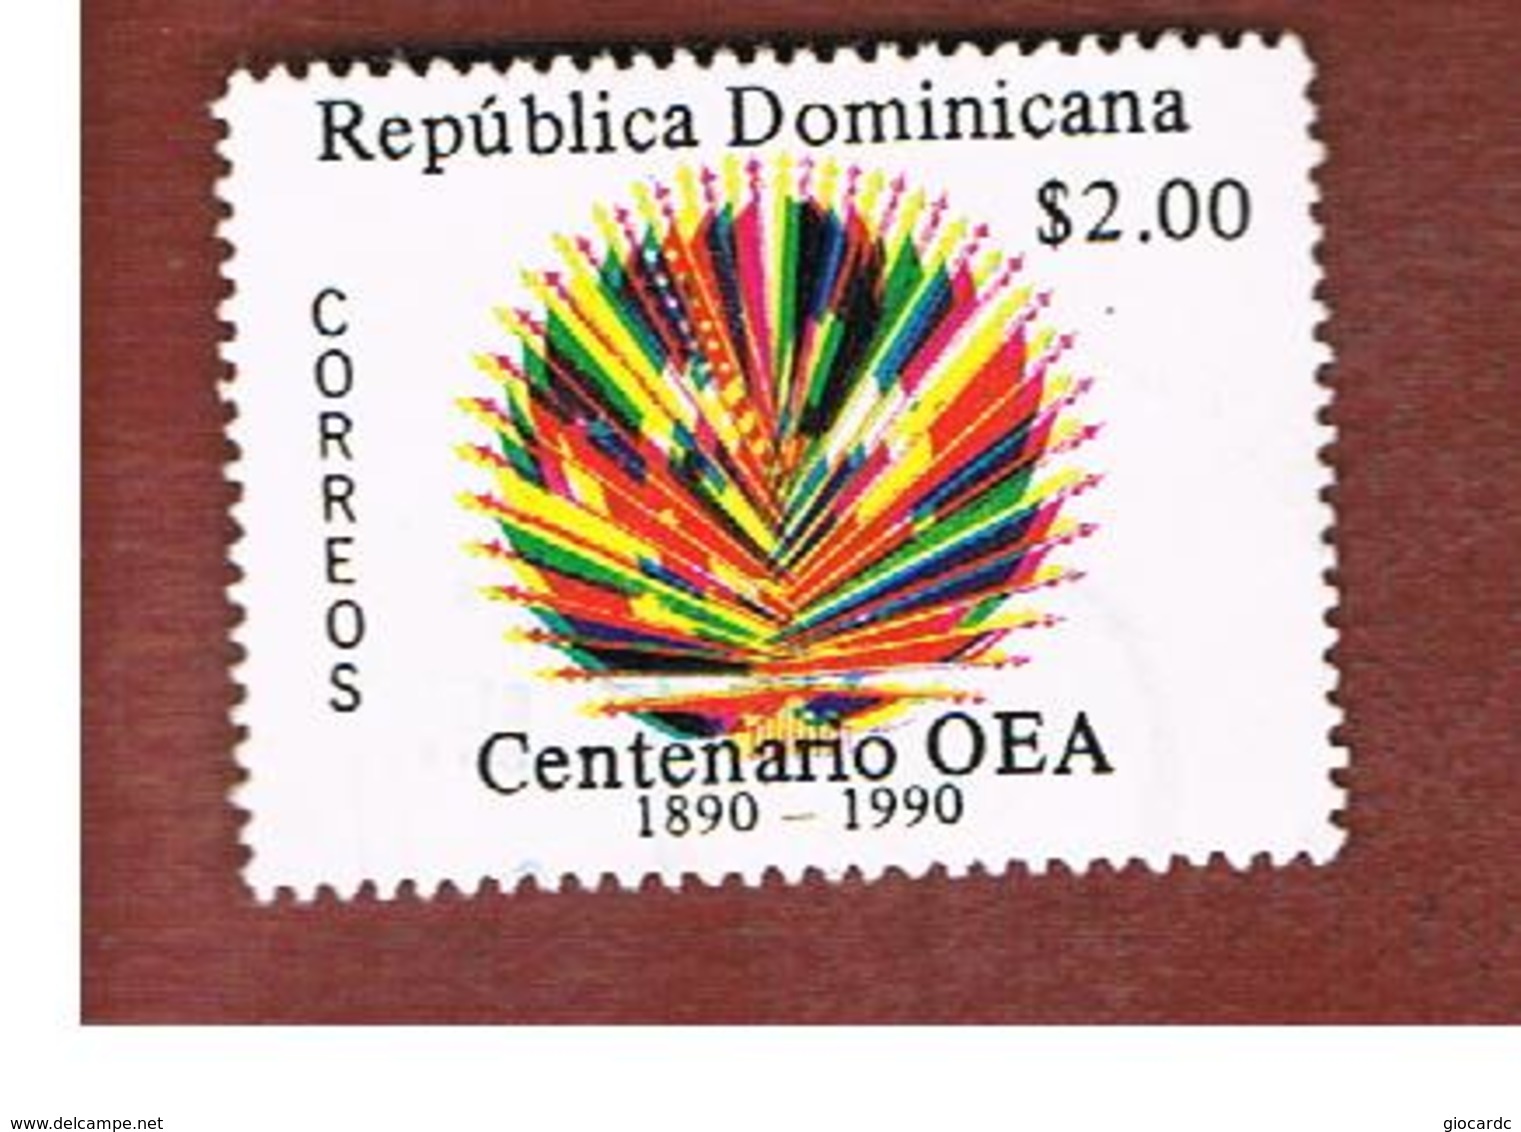 REPUBBLICA DOMENICANA (DOMINICAN REPUBLIC)  - SG 1776  -  1990  AMERICAN STATES ORGANITATION OSA (OEA)     - USED - Repubblica Domenicana